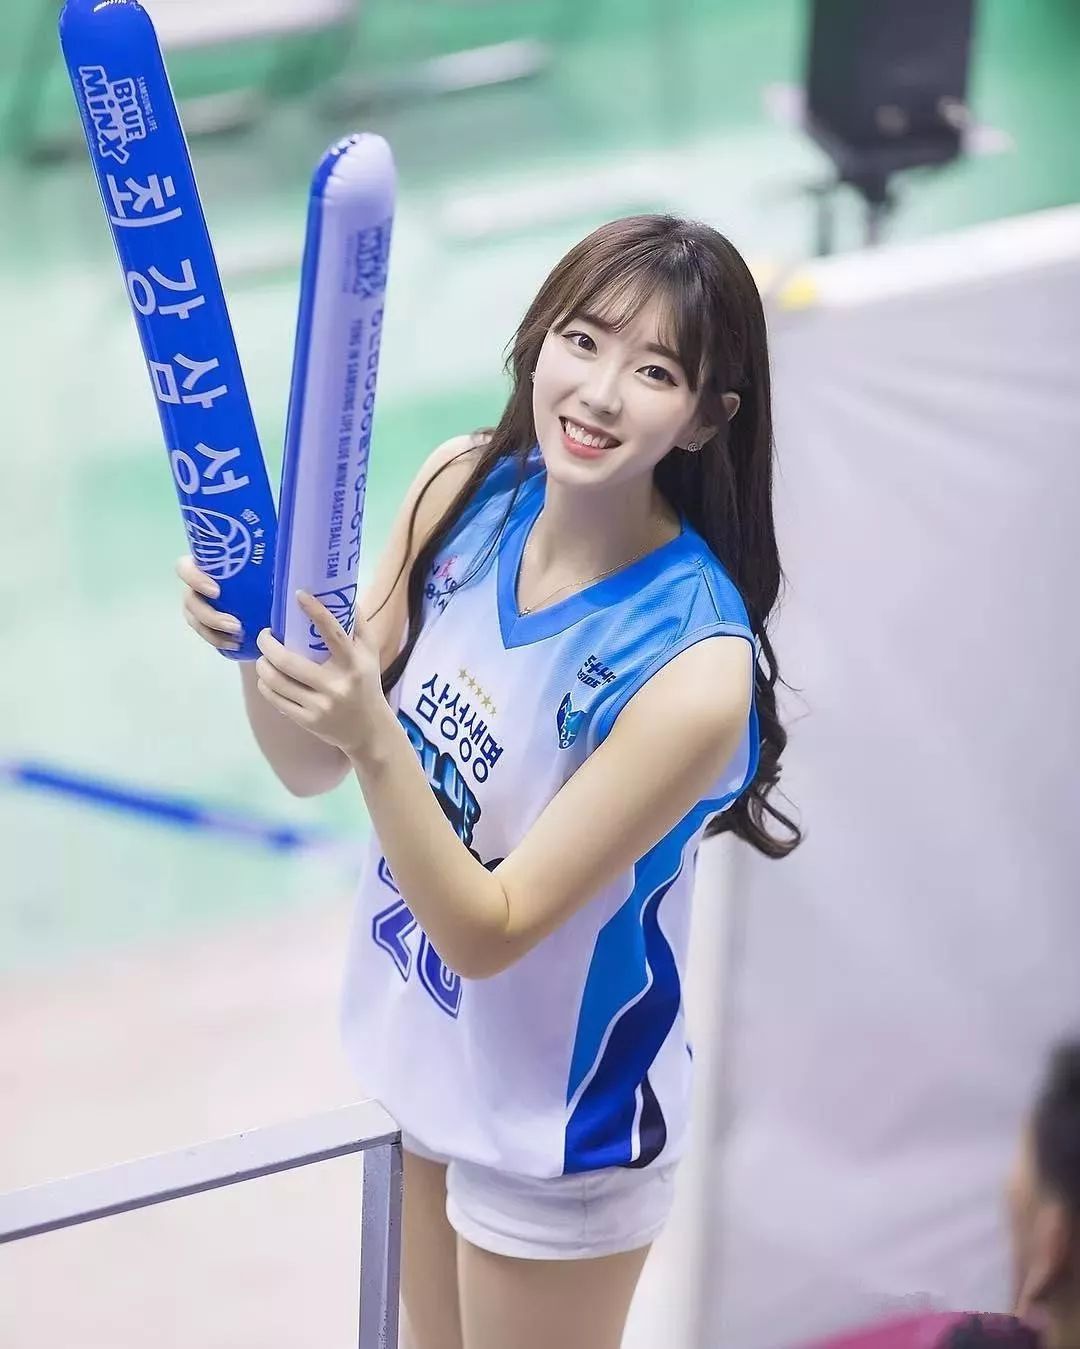 韓國籃球聯賽水平姑且不說，但是籃球妹子真心不錯！！ - 雪花新闻